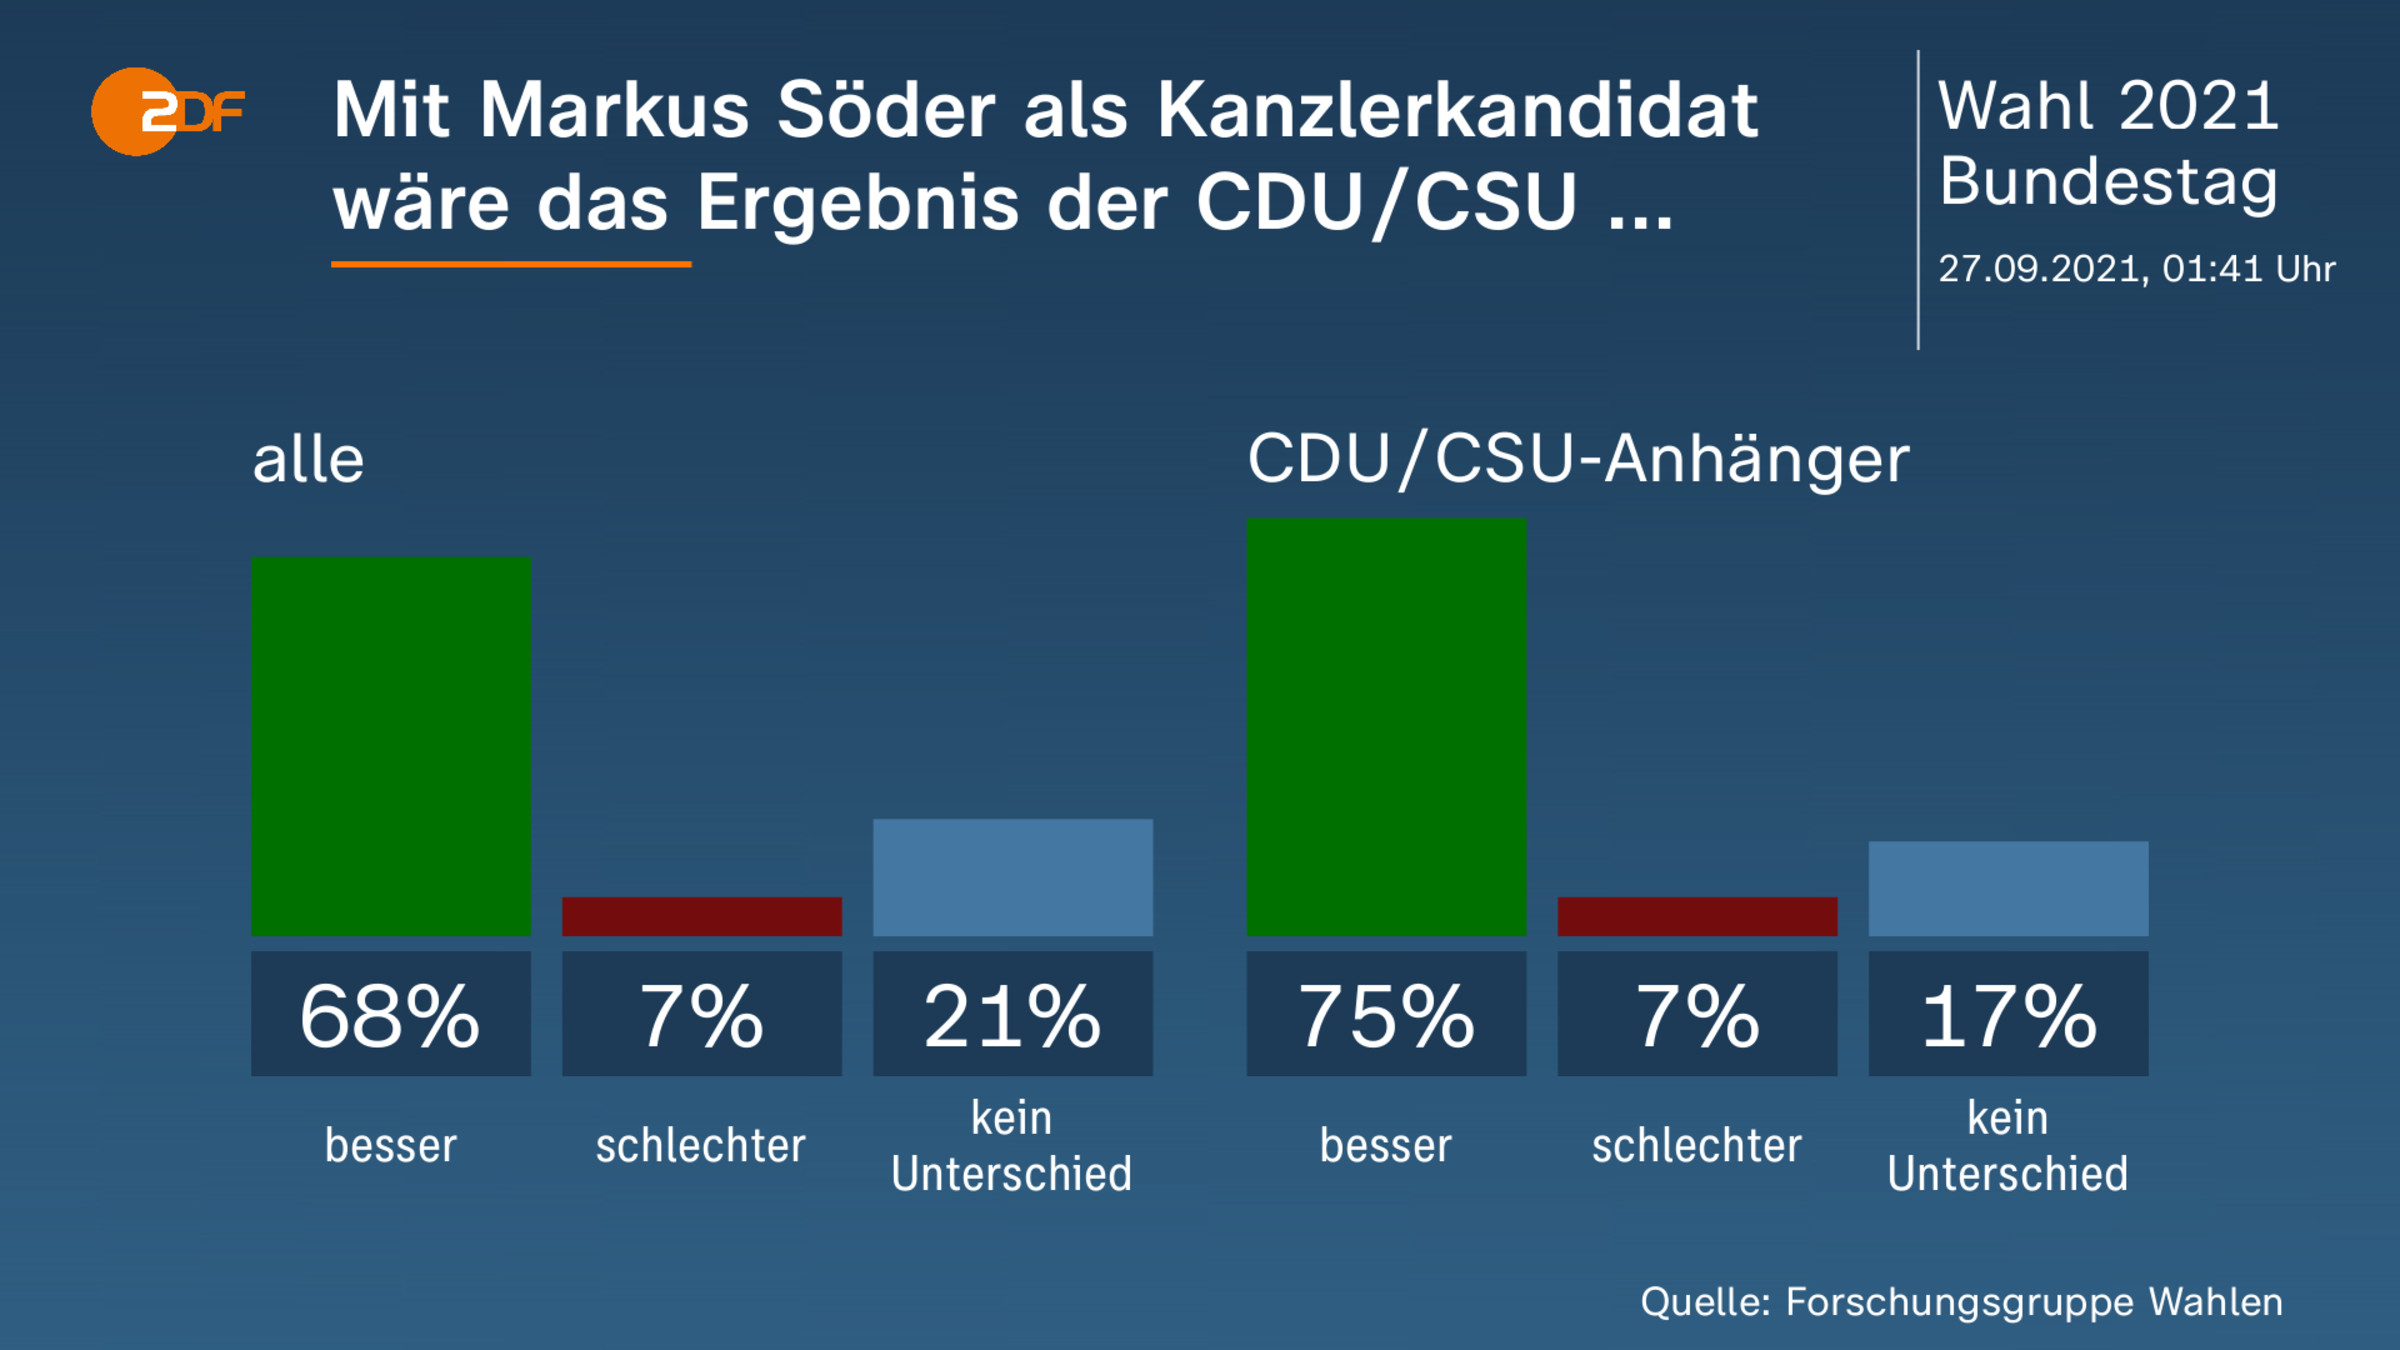 Mit Markus Söder als Kanzlerkandidat wäre das Ergebnis der CDU/CSU ... 